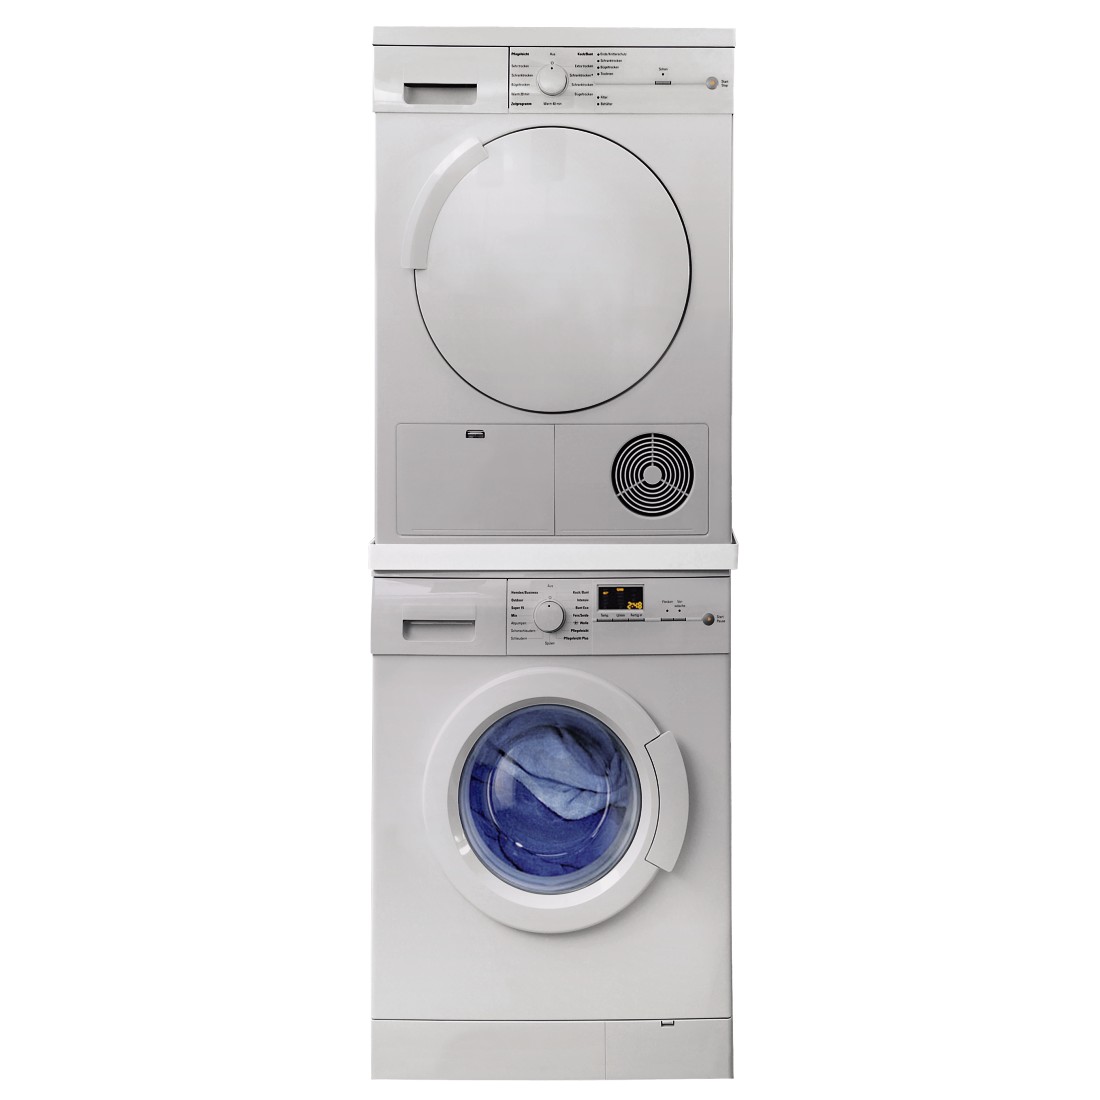 awx3 Druckfähige Anwendung 3 - Xavax, Zwischenbausatz für Waschmaschine/Trockner